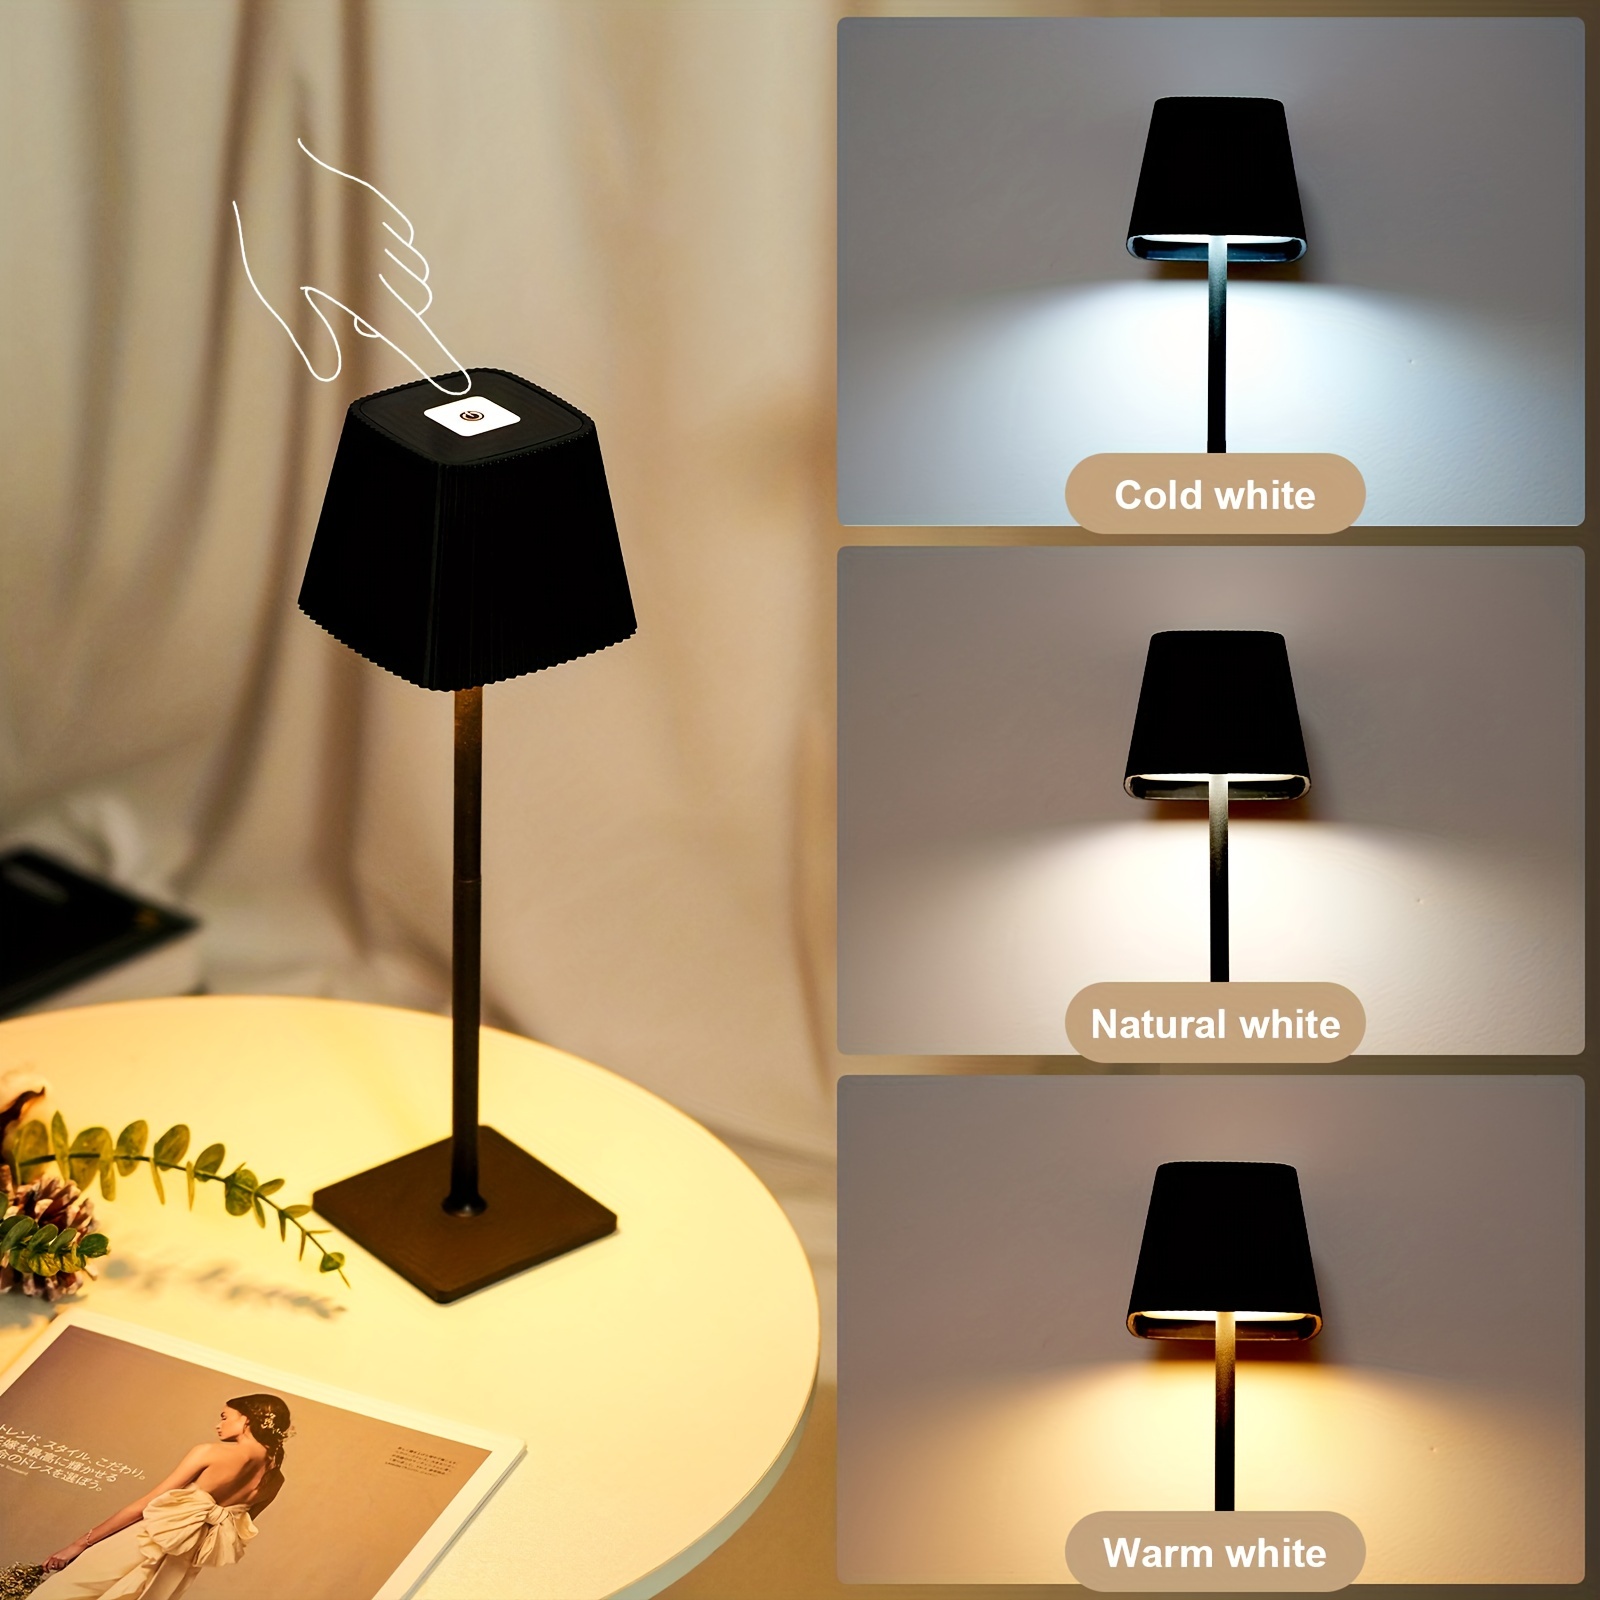 LED Table Lamp (battery powered), Black/White